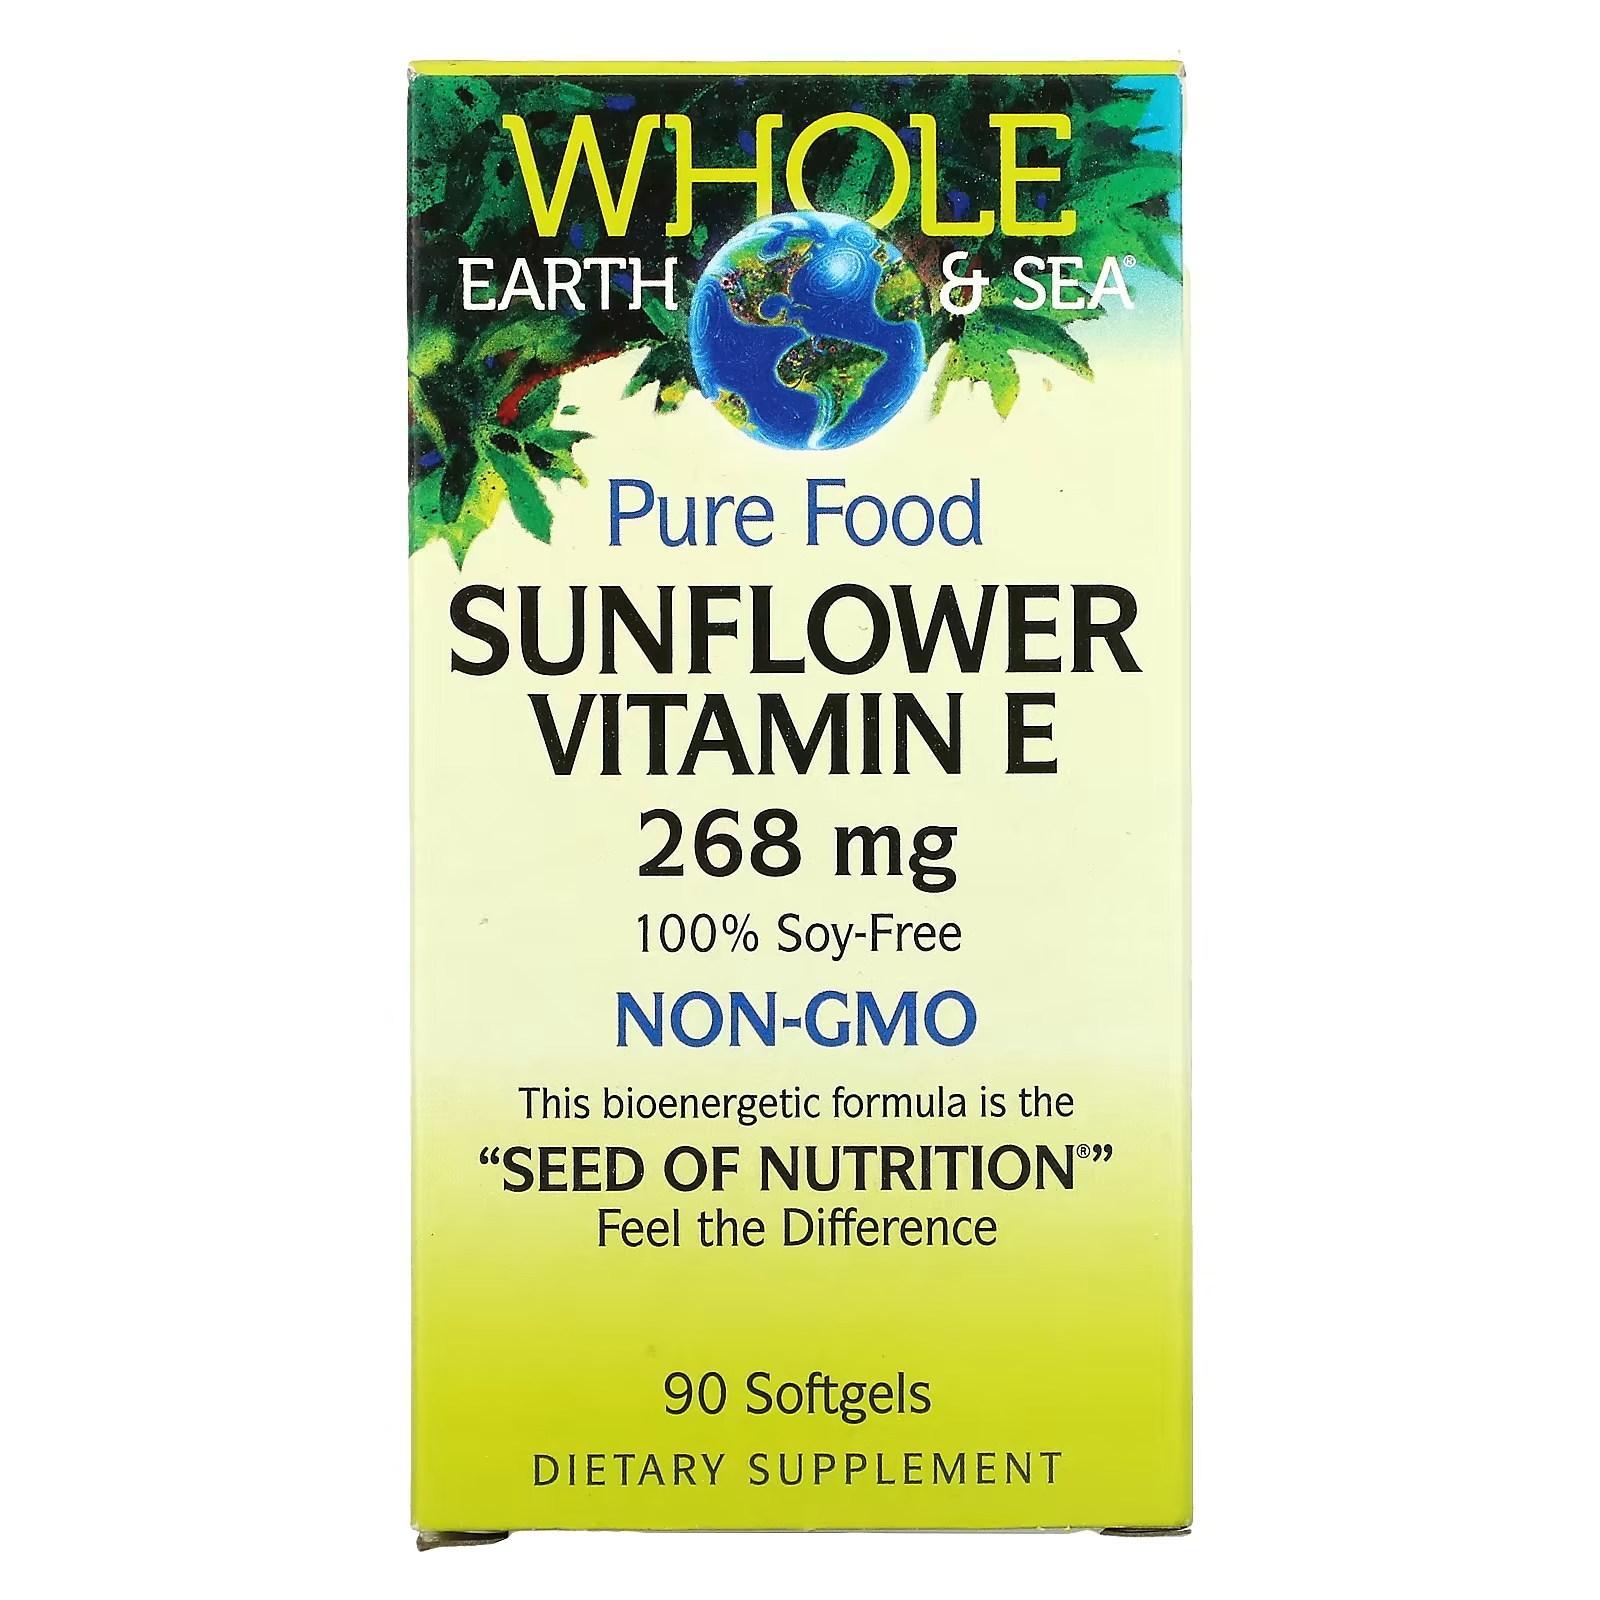 Natural Factors Whole Earth & Sea витамин Е из подсолнечника 268 мг, 90 капсул natural factors whole earth